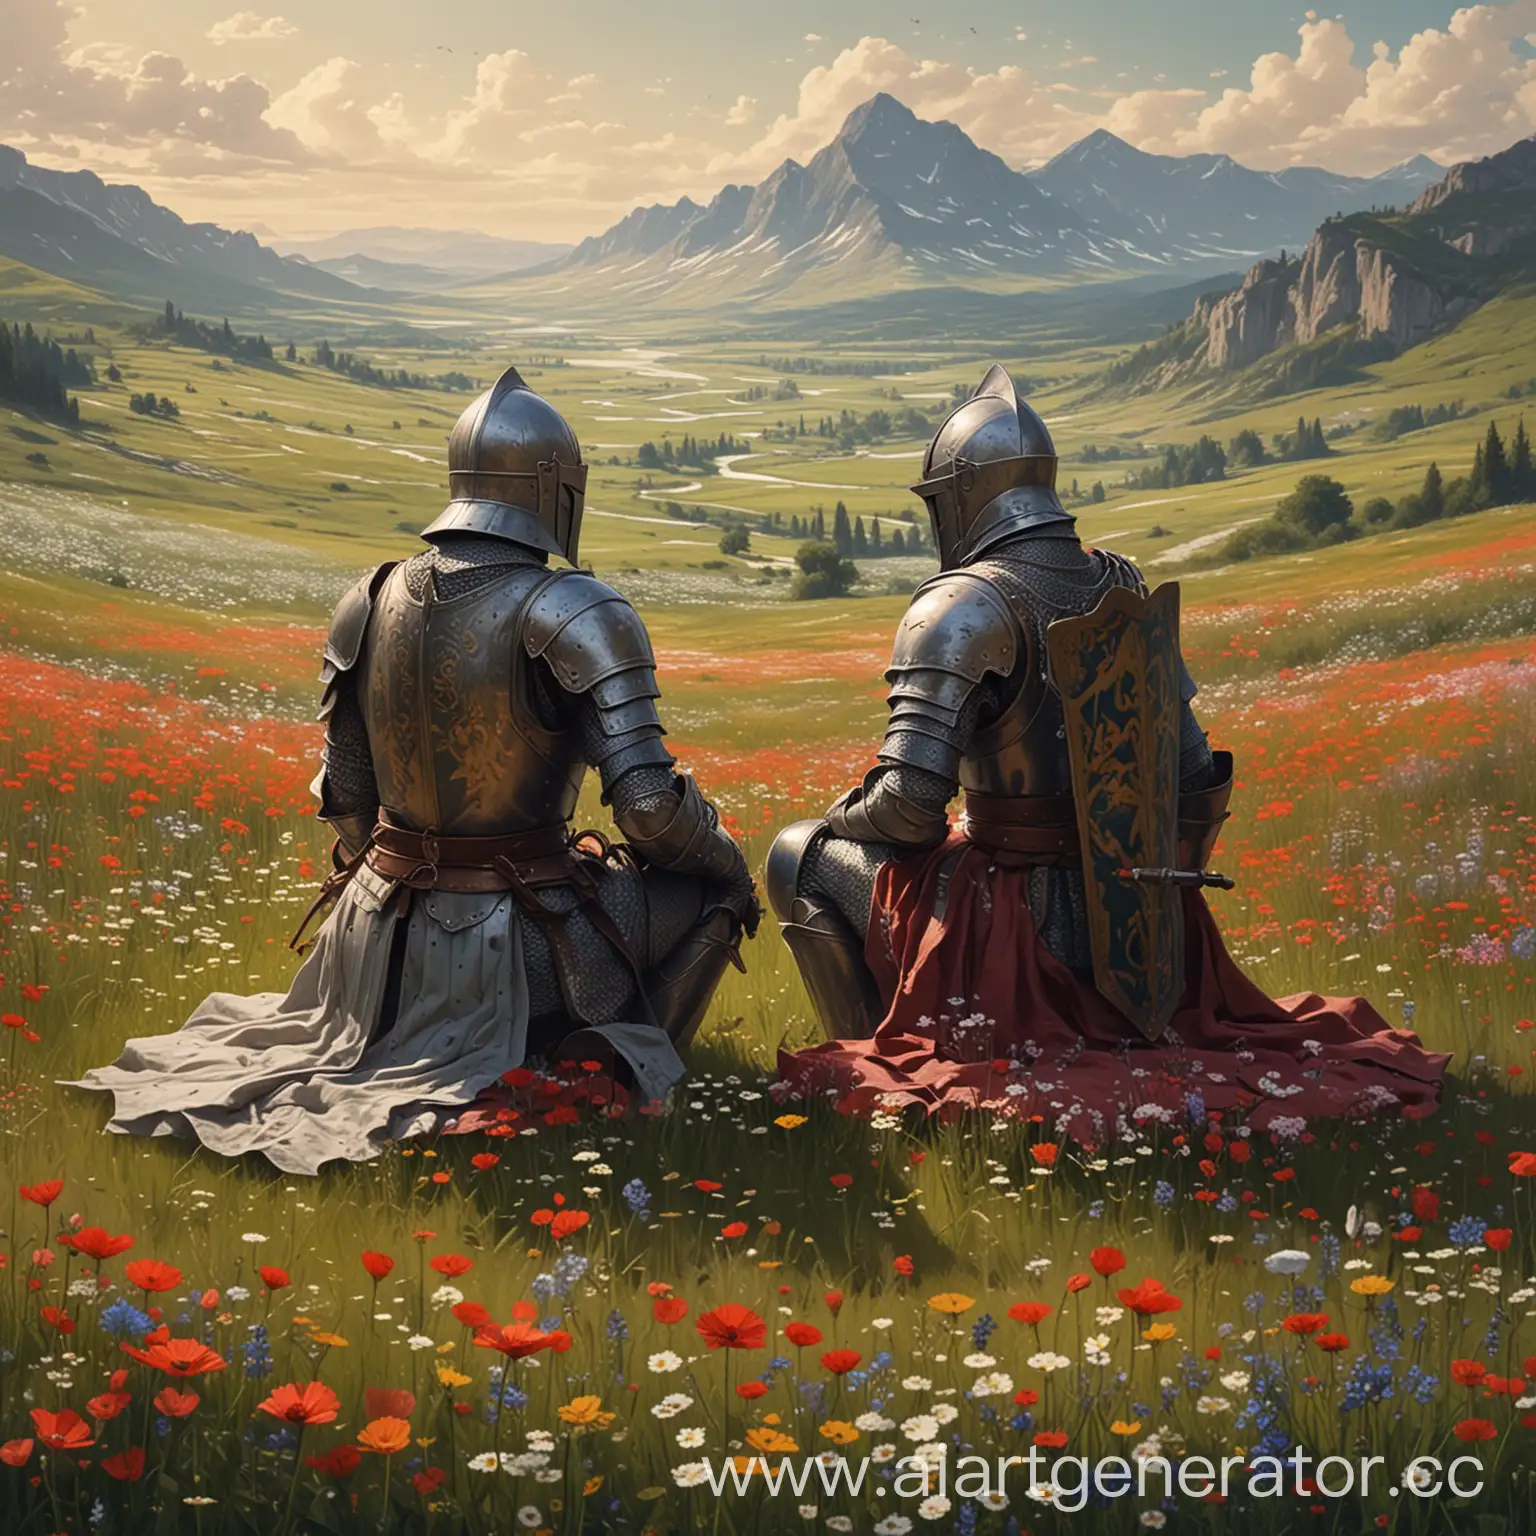 нарисуй мне двух рыцарей сидящих на полянке полной цветов на горизонте будут  длинные горы так же заполненные цветами